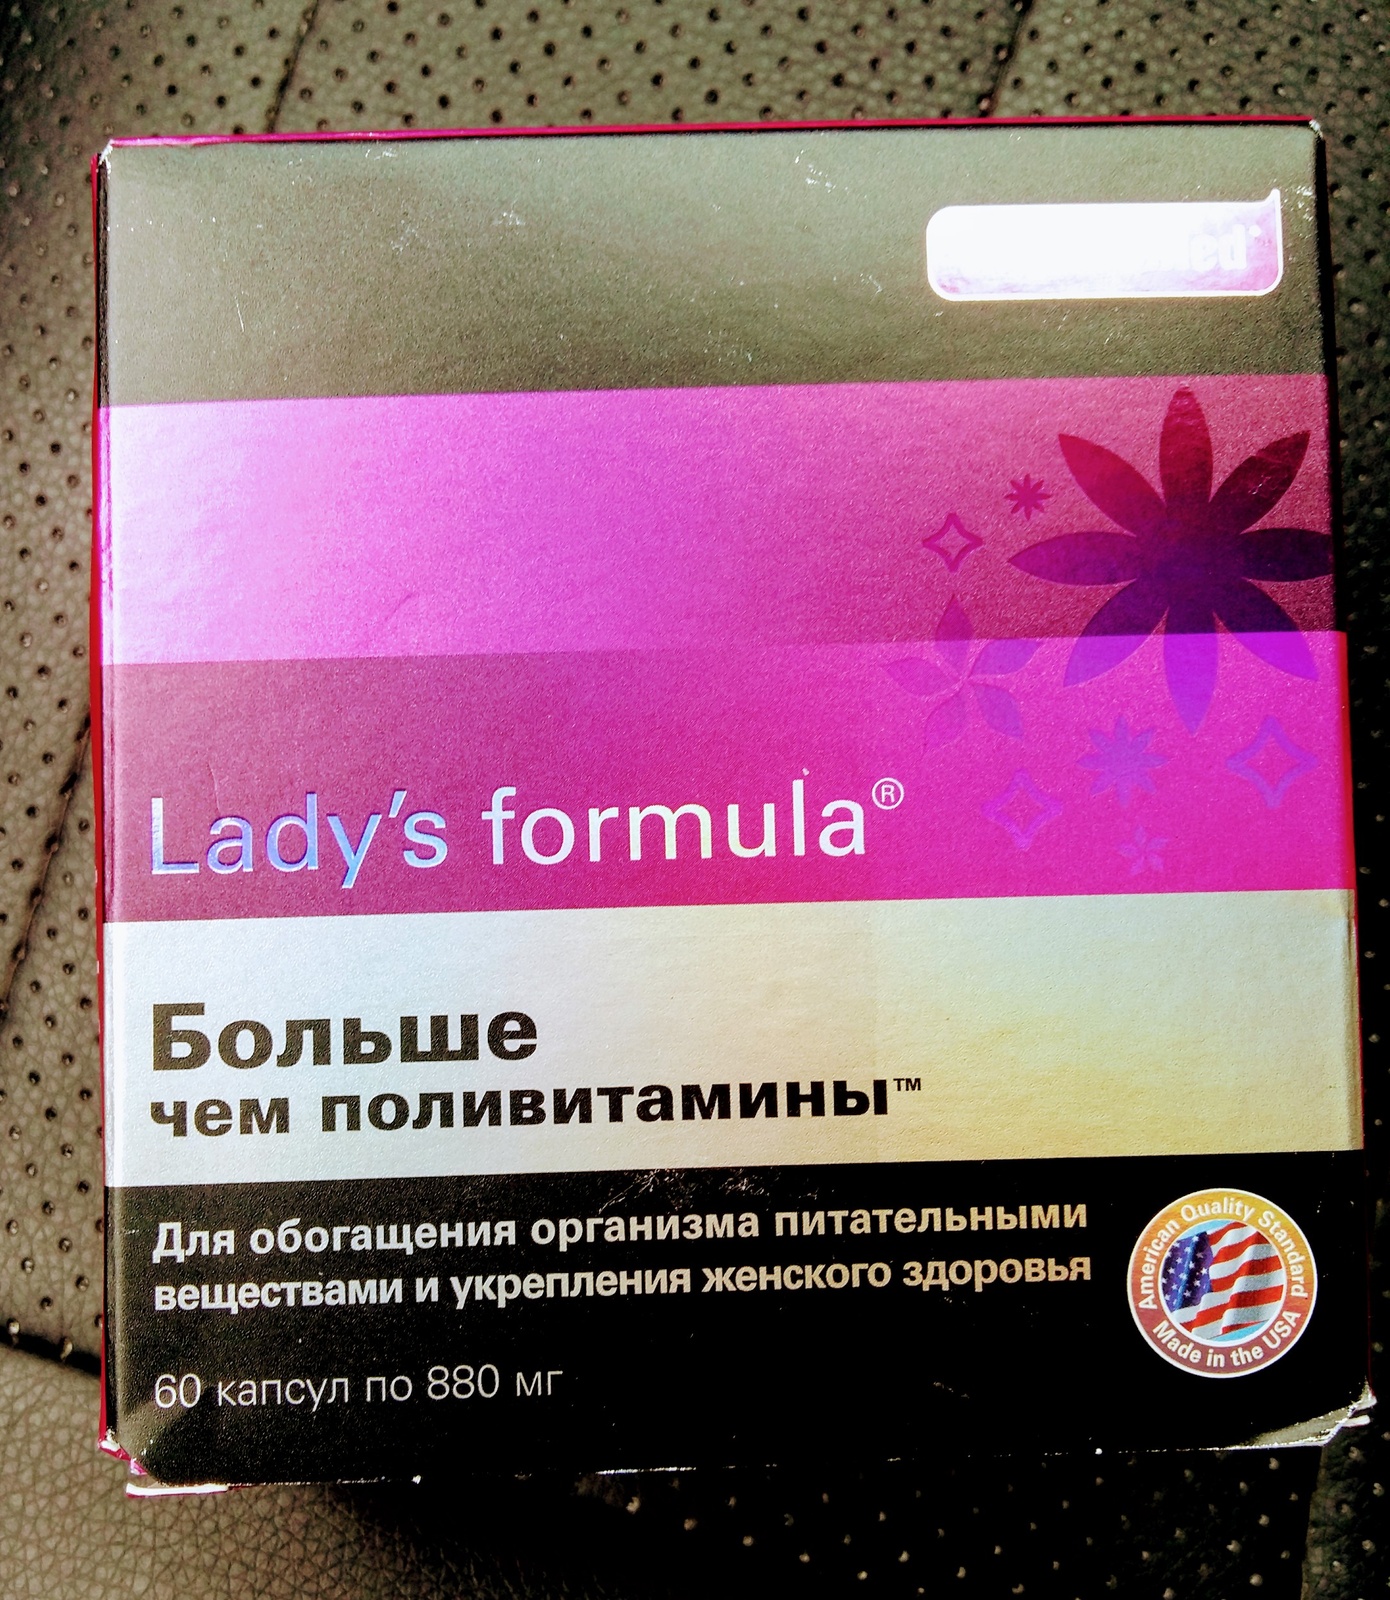 Lady formula больше чем поливитамины отзывы. Lady's Formula больше чем поливитамины. Витамины для женщин ледис формула. Витамины ледис формула 50+. Ледис формула больше поливитамины для женщин.